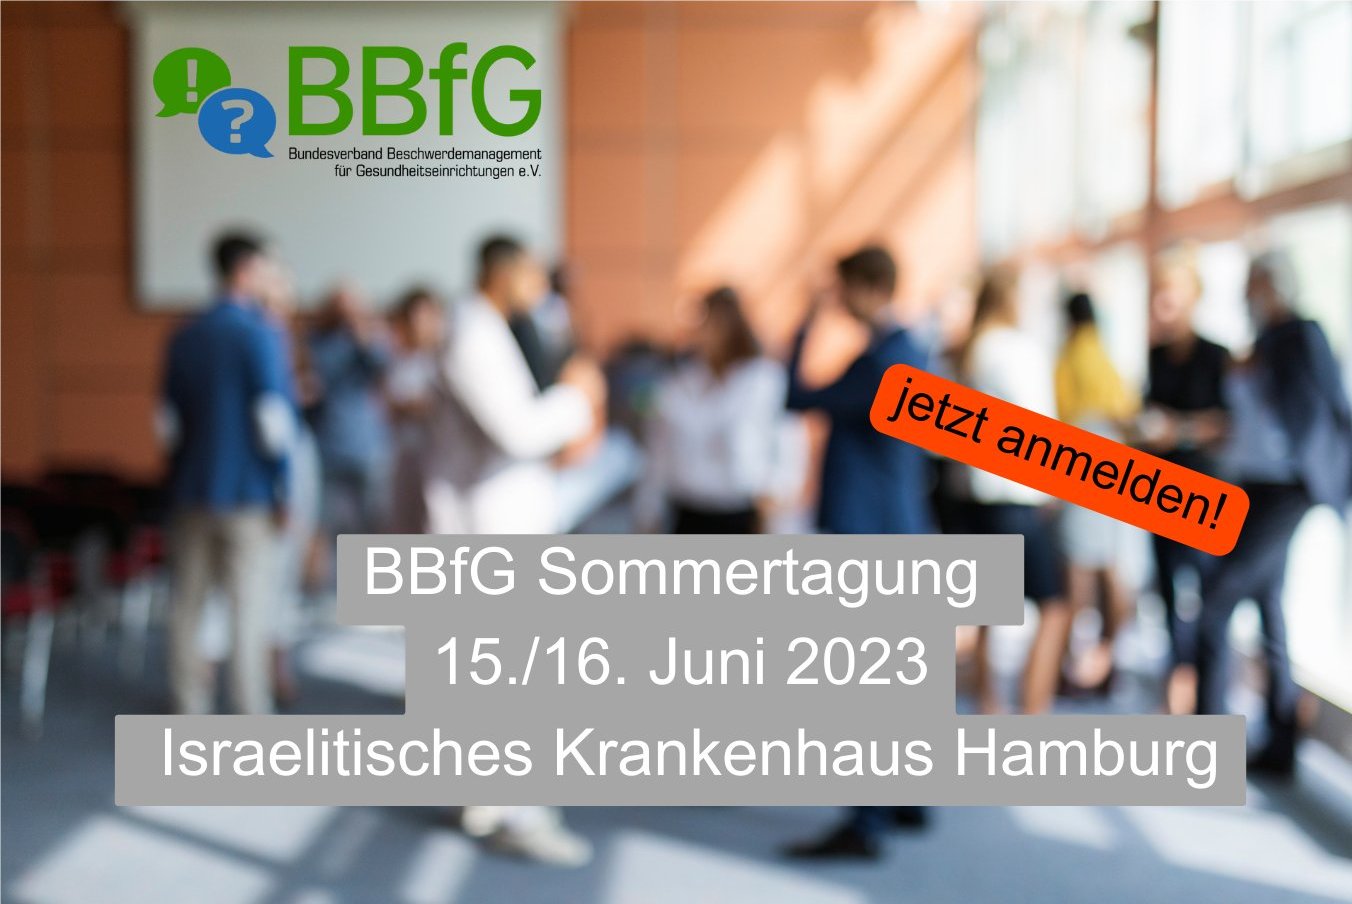 Sommertagung 2023 des BBfG in Hamburg am Israelitischen Krankenhaus